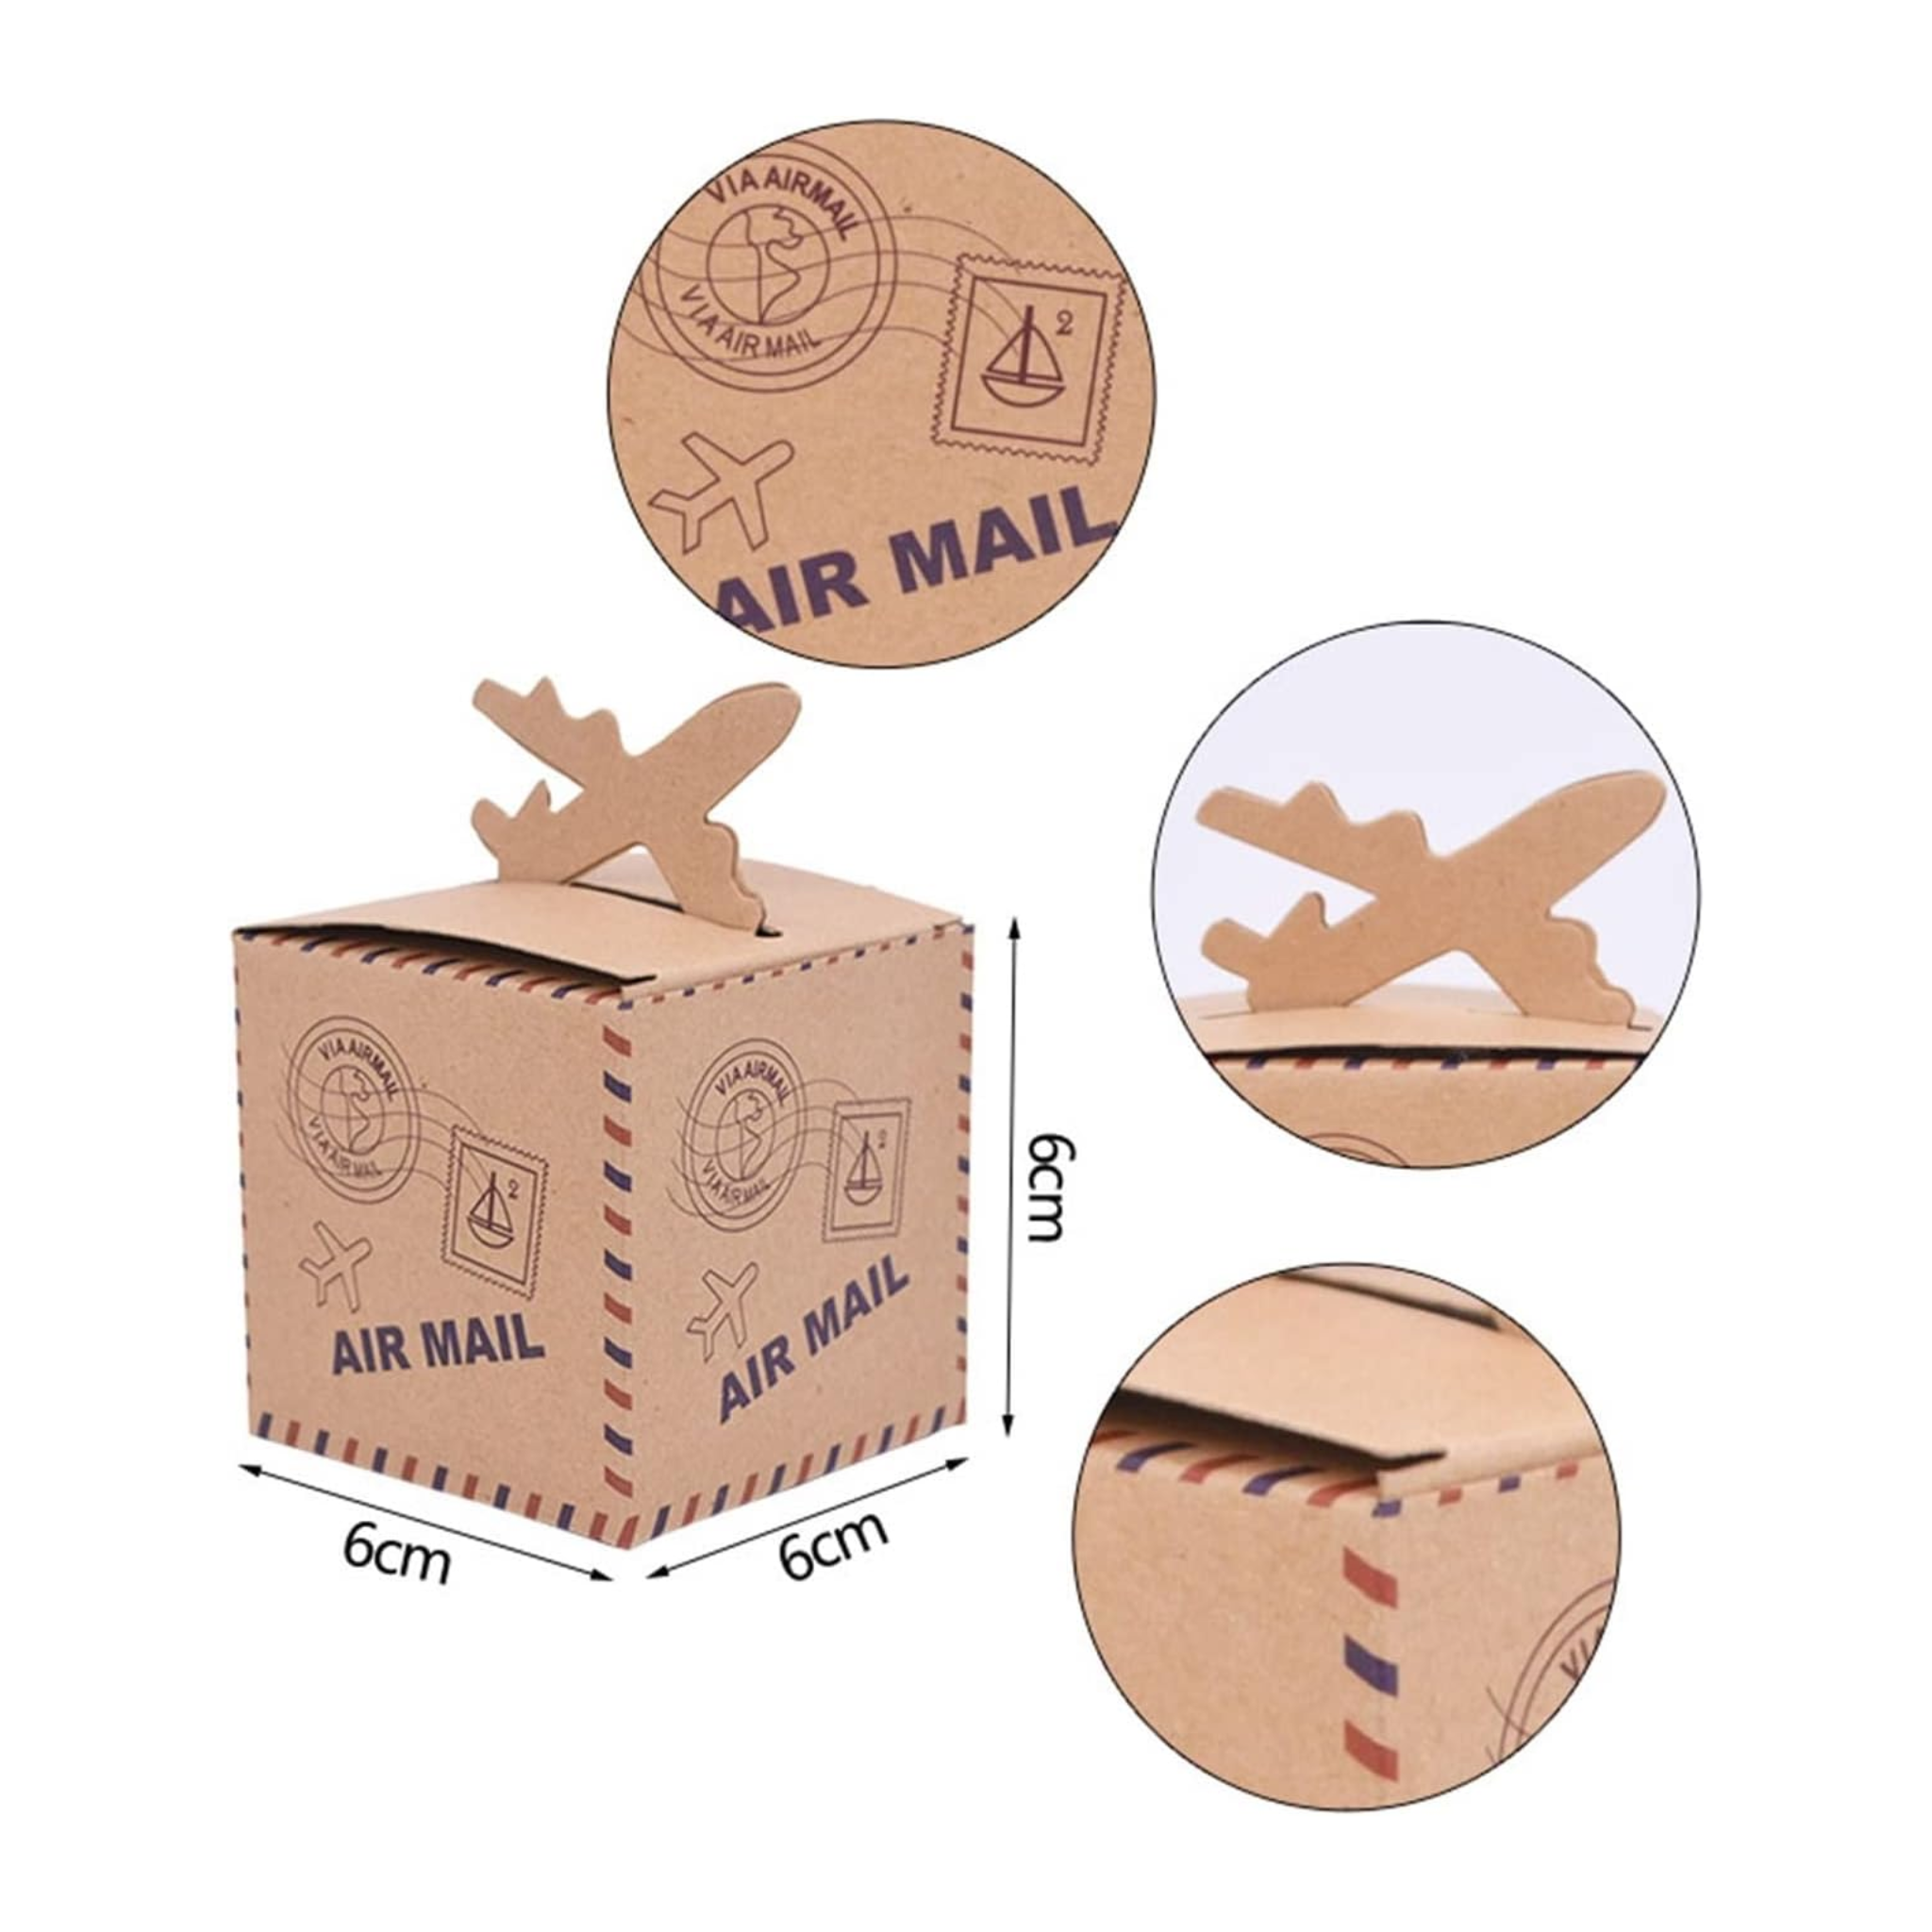 Aircraft-Shape Paper Favor Box Sets